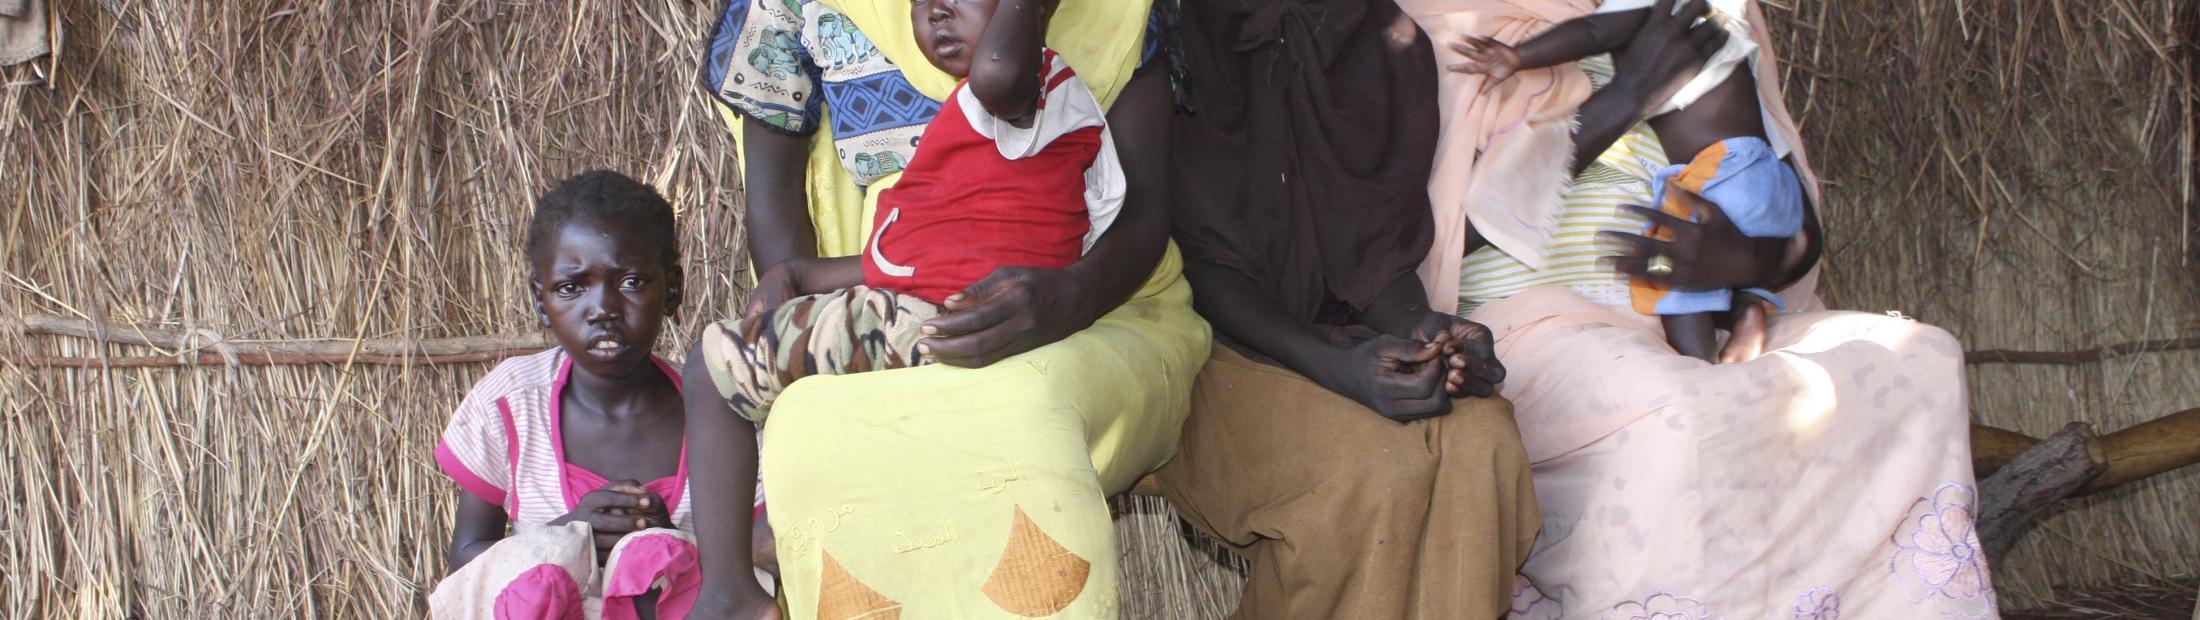 Respondiendo a una crisis humanitaria y salvando vidas: ACNUR en Sudán del Sur